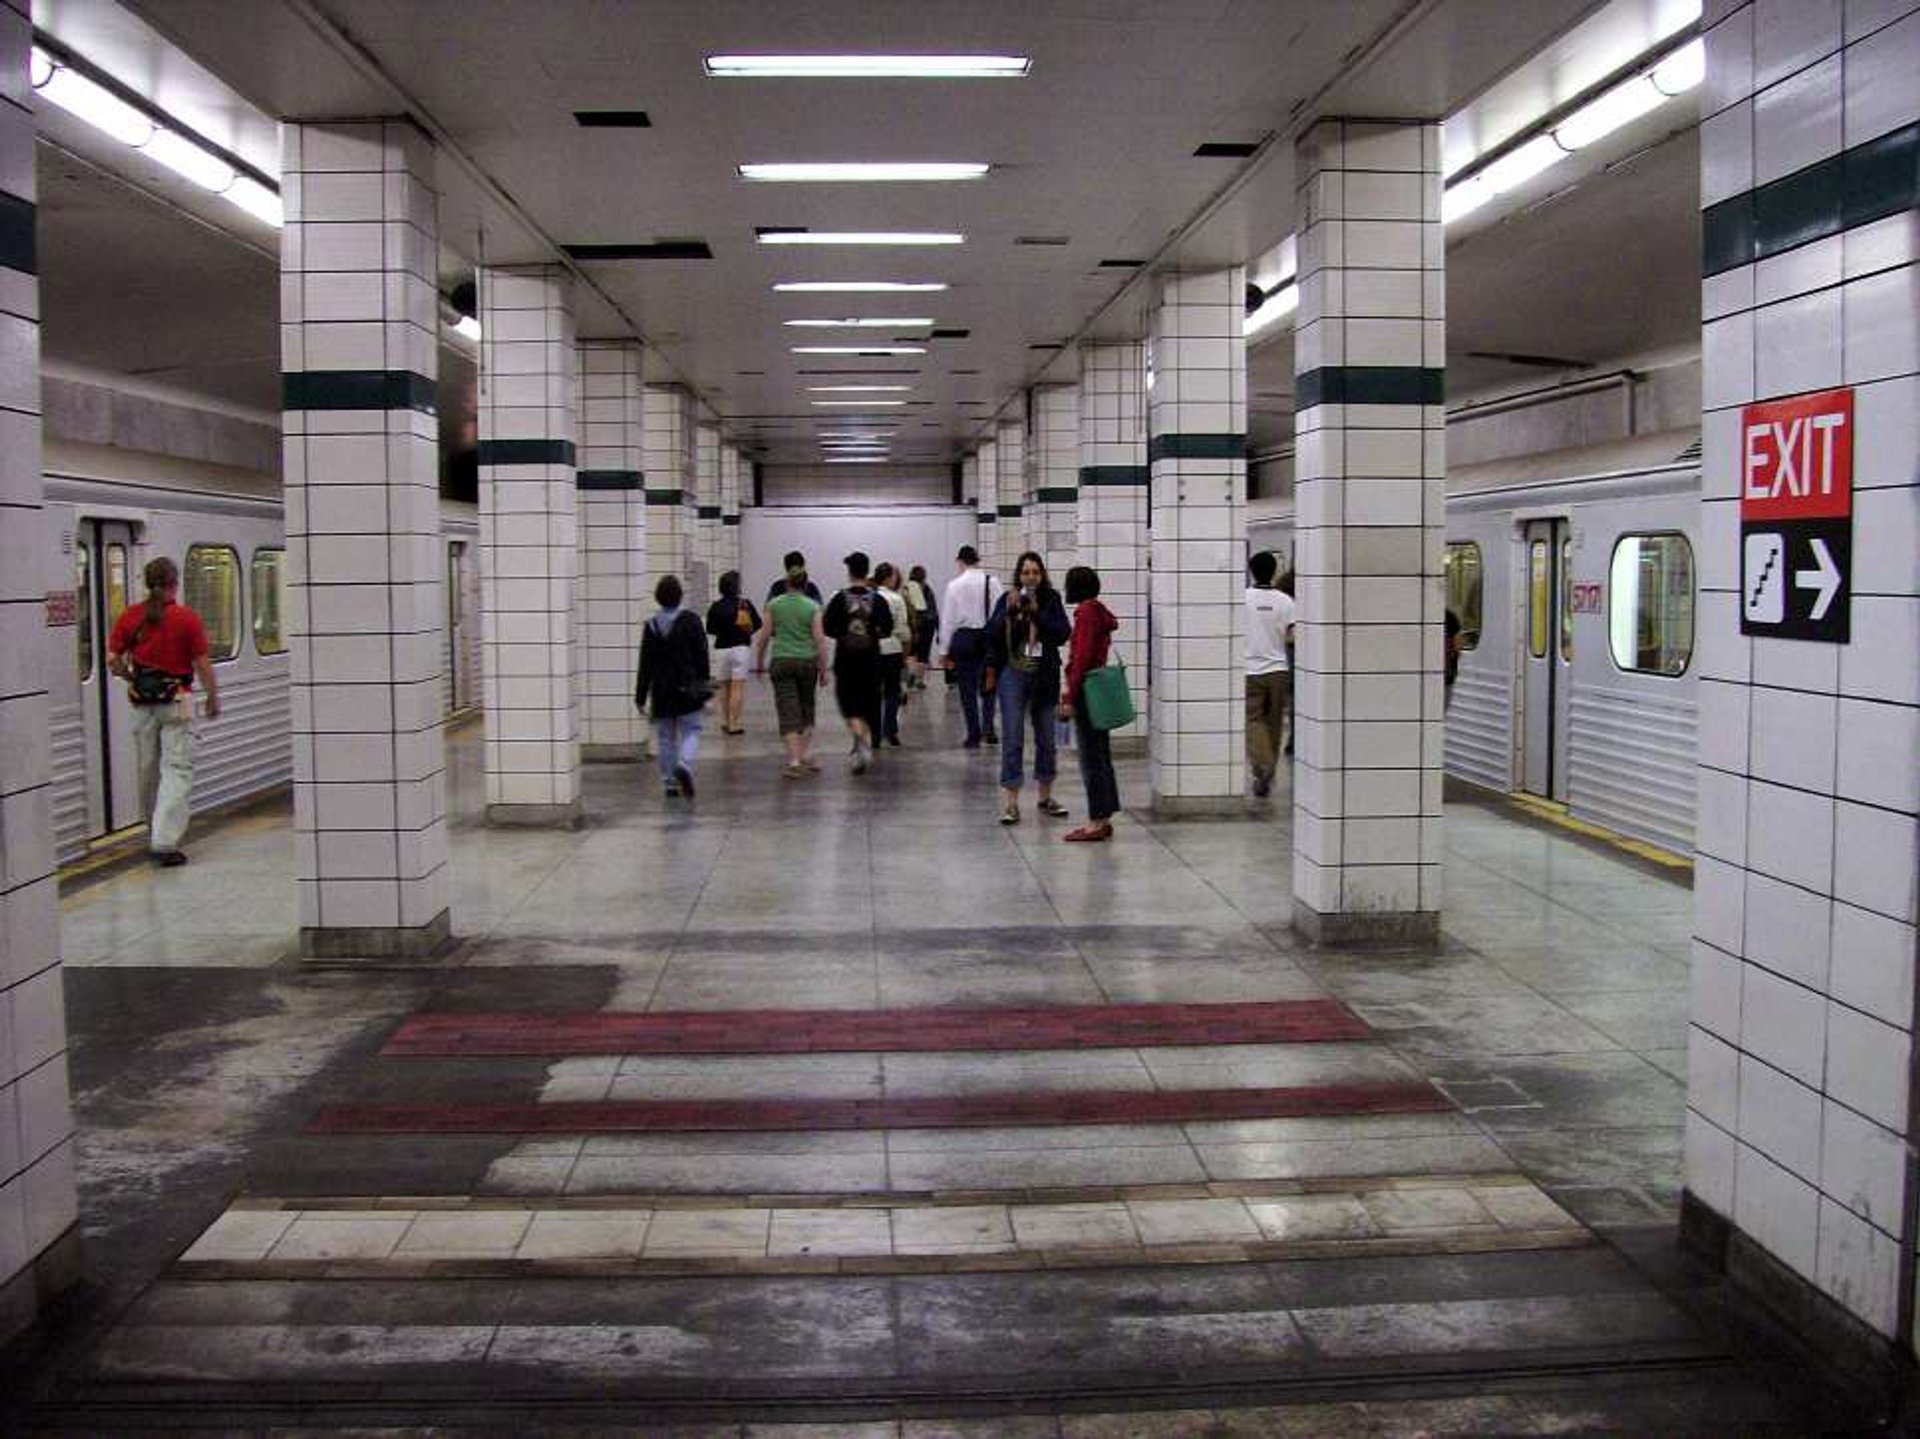 Lower Bay Station